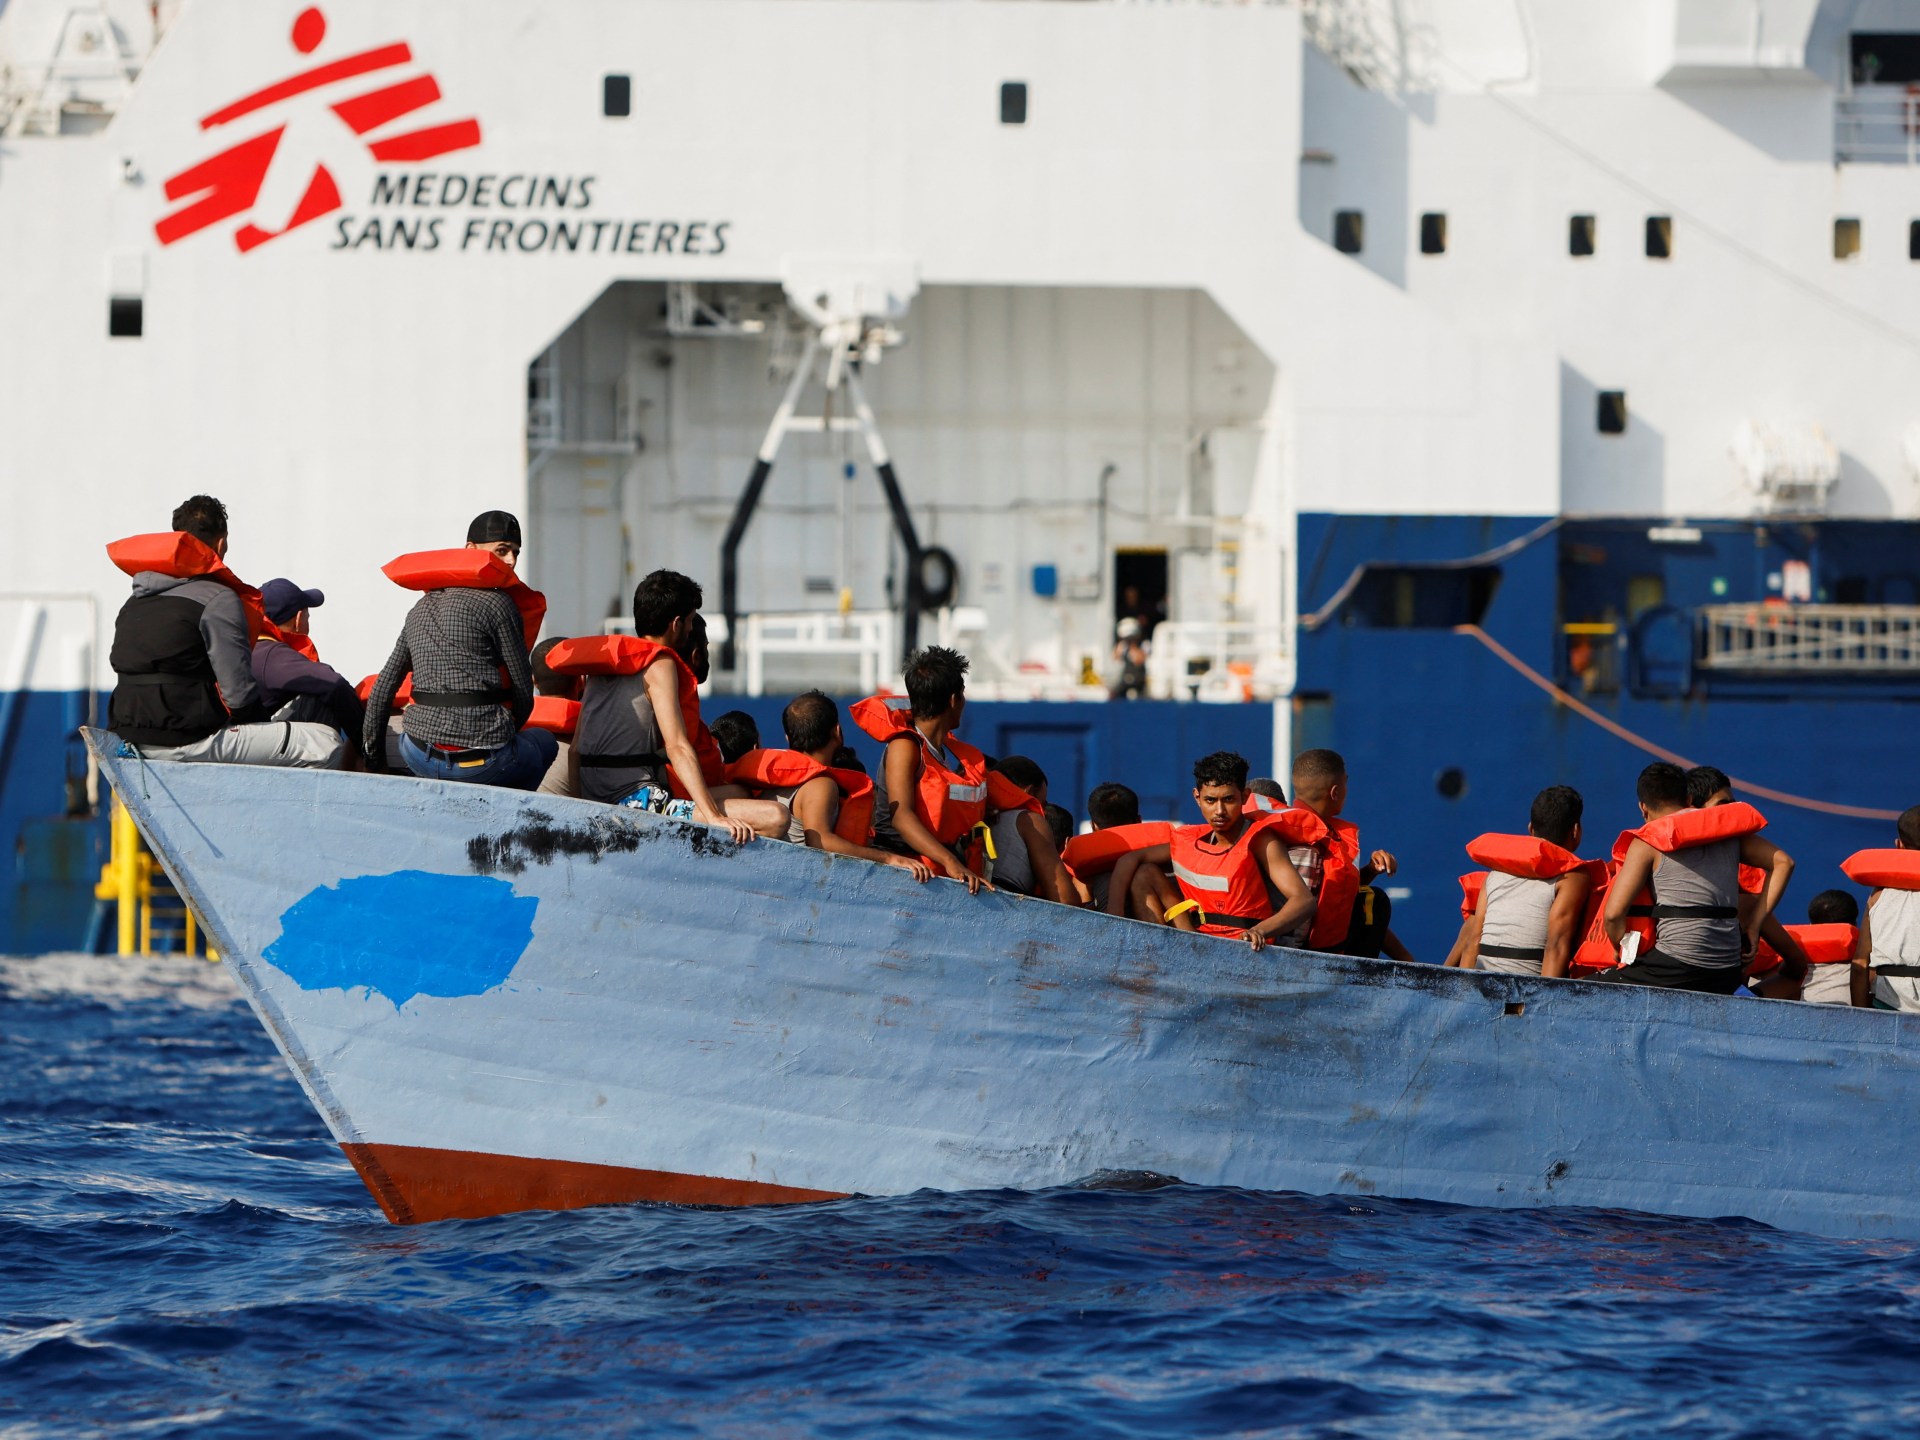 Dziesiątki osób ubiegających się o azyl utonęły po zatonięciu statku u wybrzeży Libii: Międzynarodowa Organizacja ds. Migracji |  Wiadomości imigracyjne